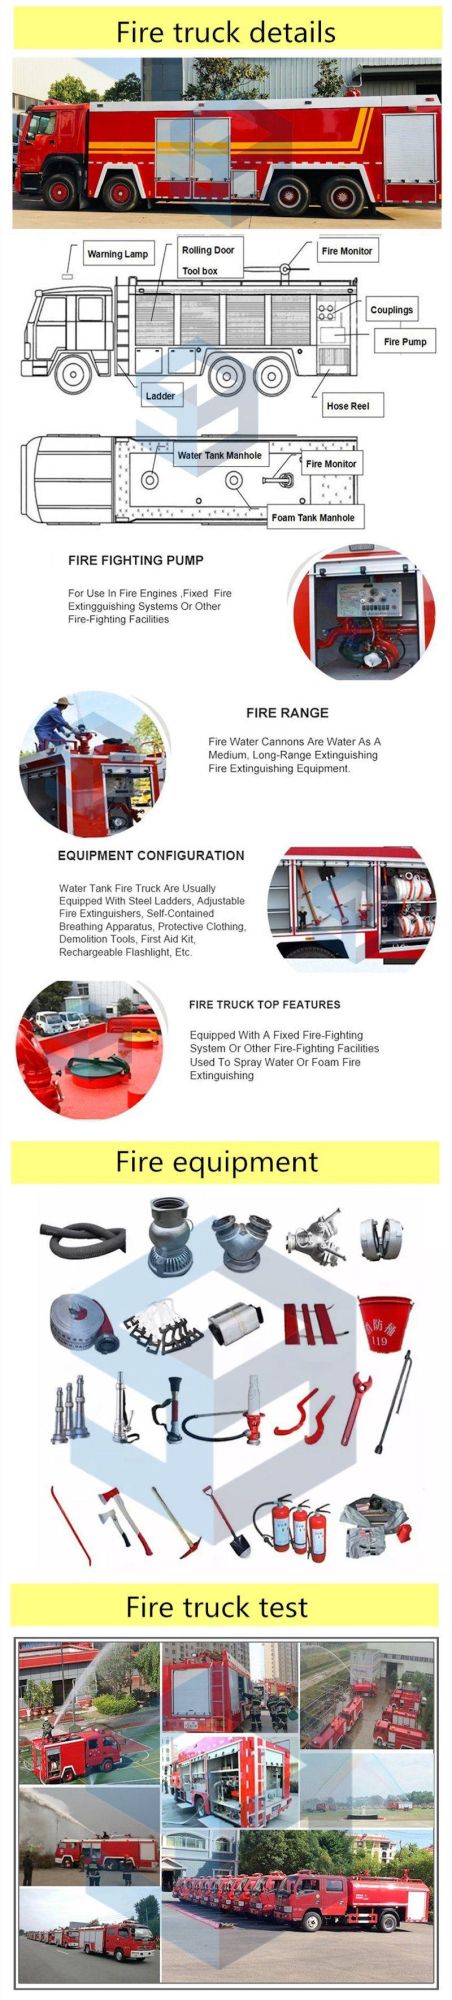 Isuzu Fire Engine Fire Truck 10wheels 266HP Water and Foam Fire Truck